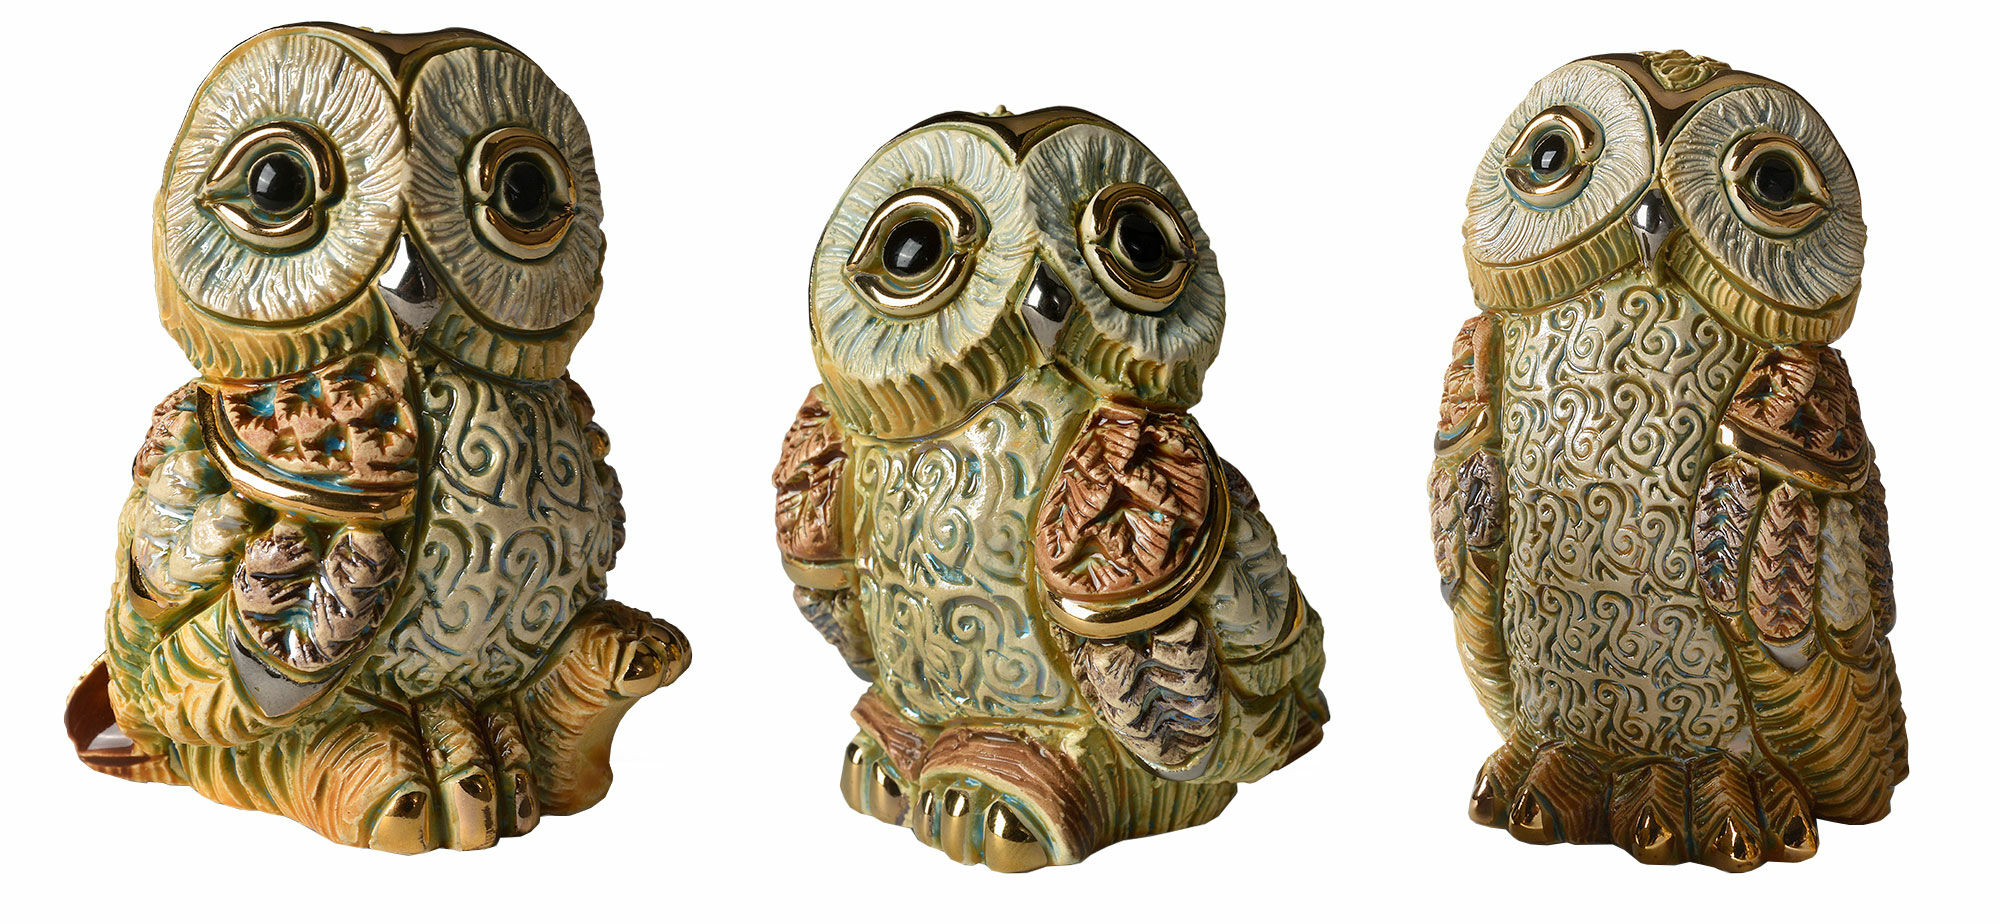 Sæt med 3 keramikfigurer "Uglefamilie"